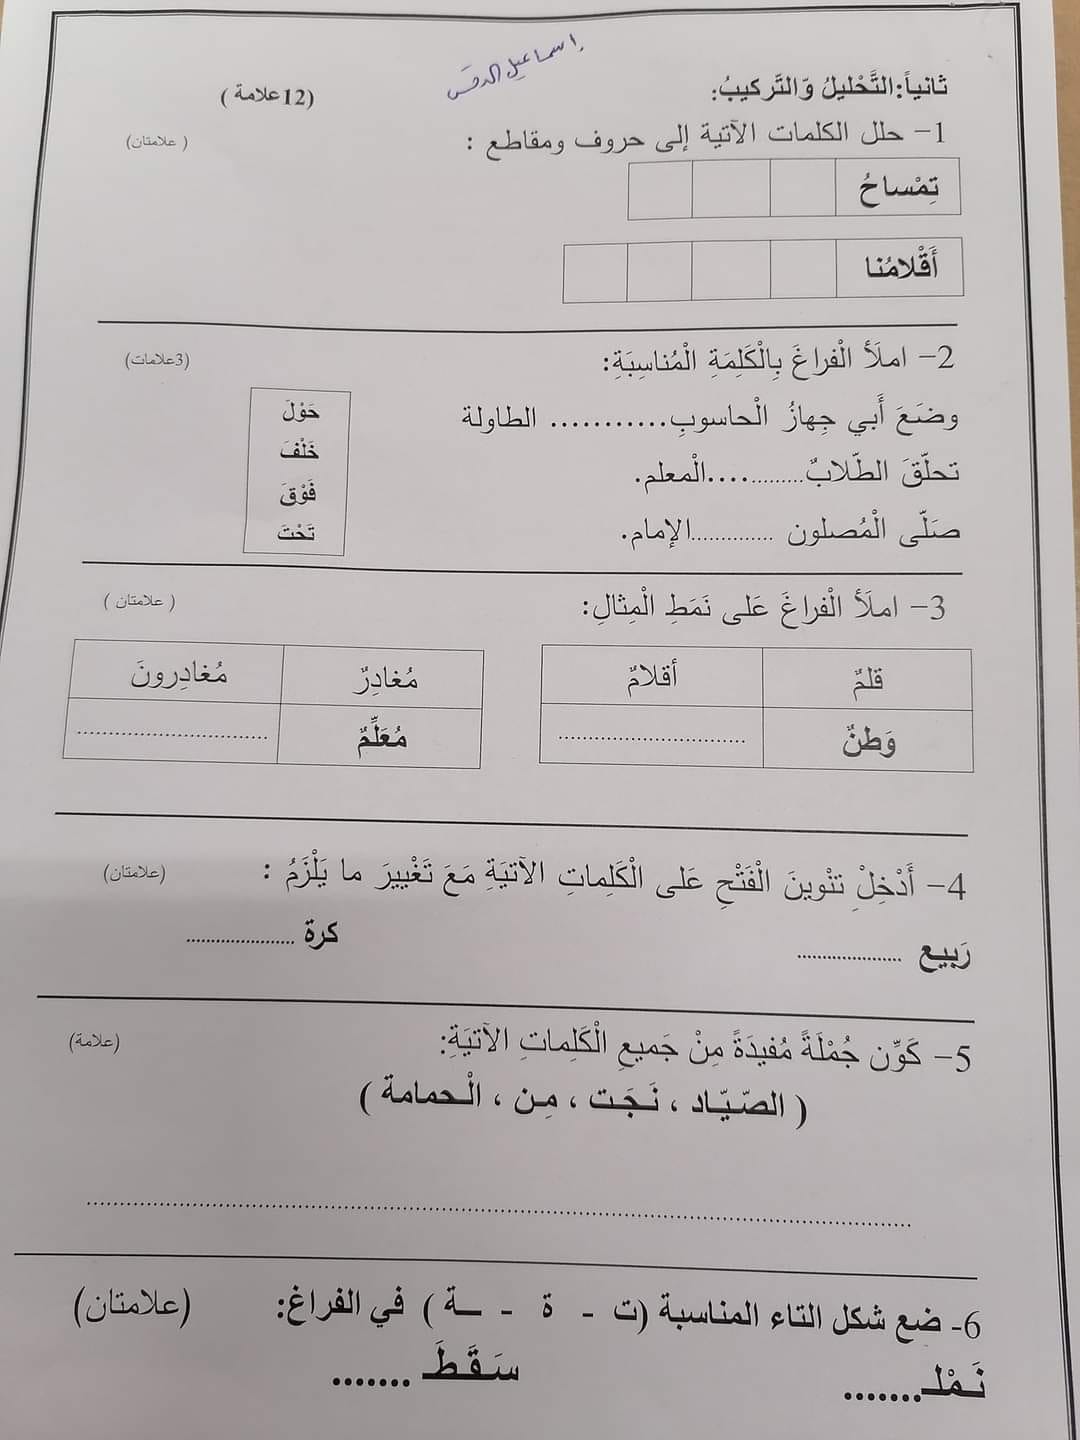 صور امتحان نهائي لمادة اللغة العربية للصف الثاني الفصل الاول 2021 نموذج وكالة